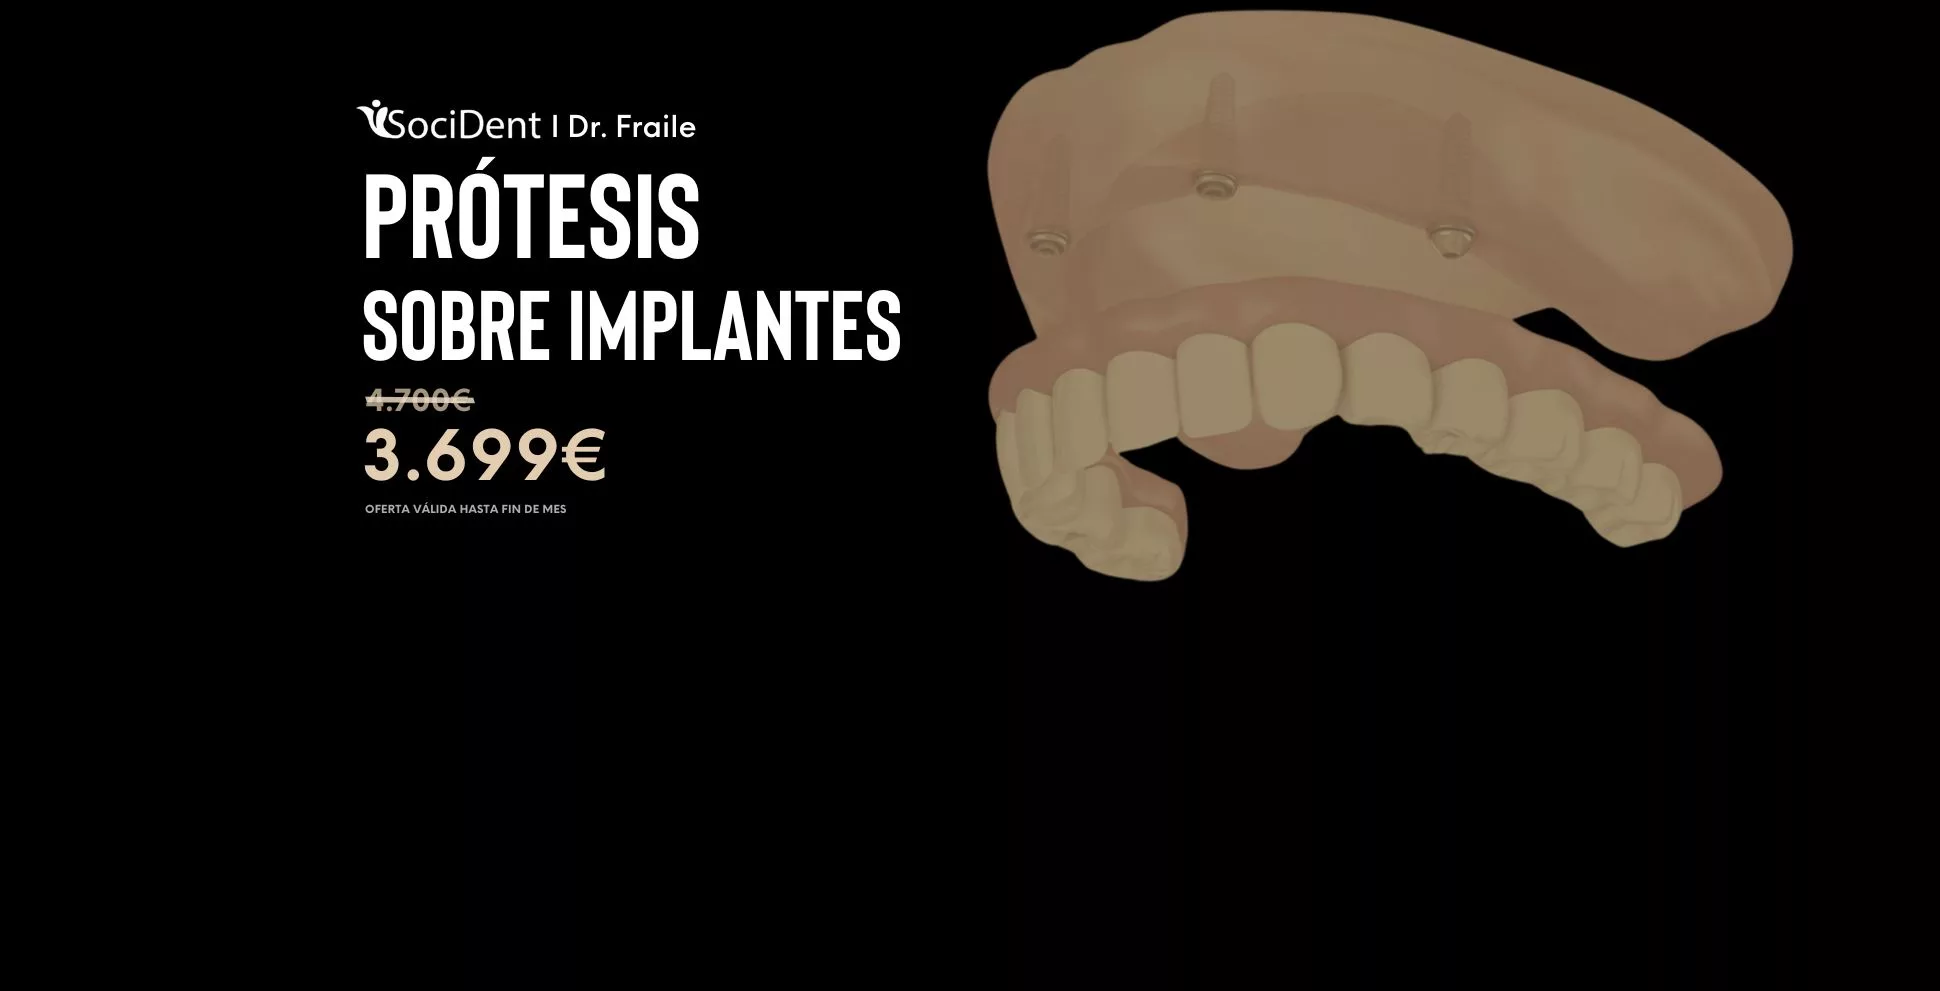 oferta protesis sobre implantes y sobredentadura en mostoles madrid y navalcarnero clinicas socident dr fraile